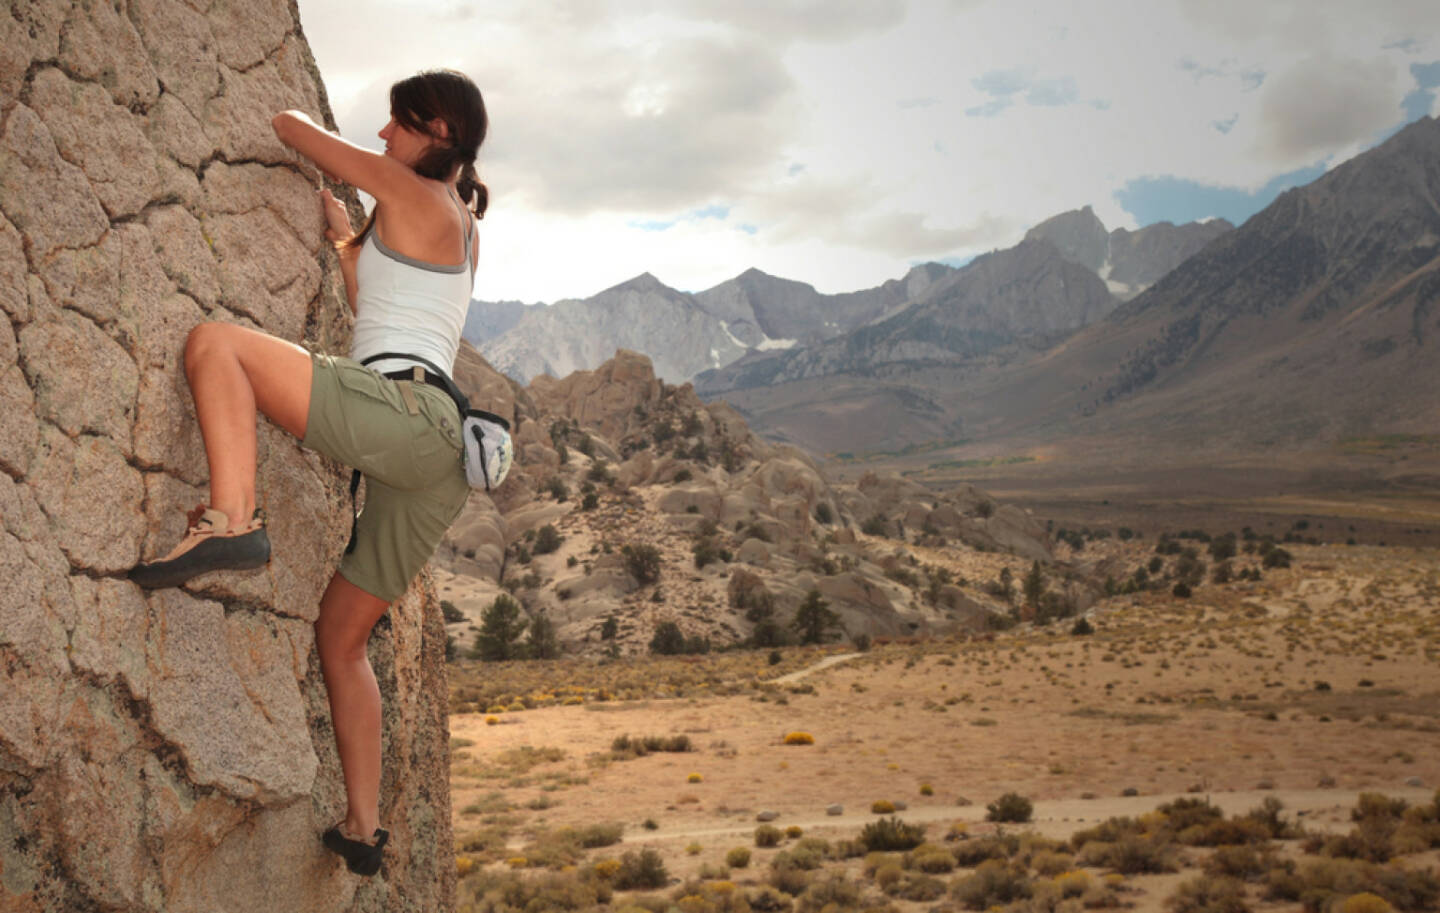 freeclimbing, klettern, hinauf, aufwärts, ungesichert, ungewiss, mutig, Höhe, unsicher, http://www.shutterstock.com/de/pic-63623488/stock-photo-a-strong-woman-climbs-up-a-rock-face.html 